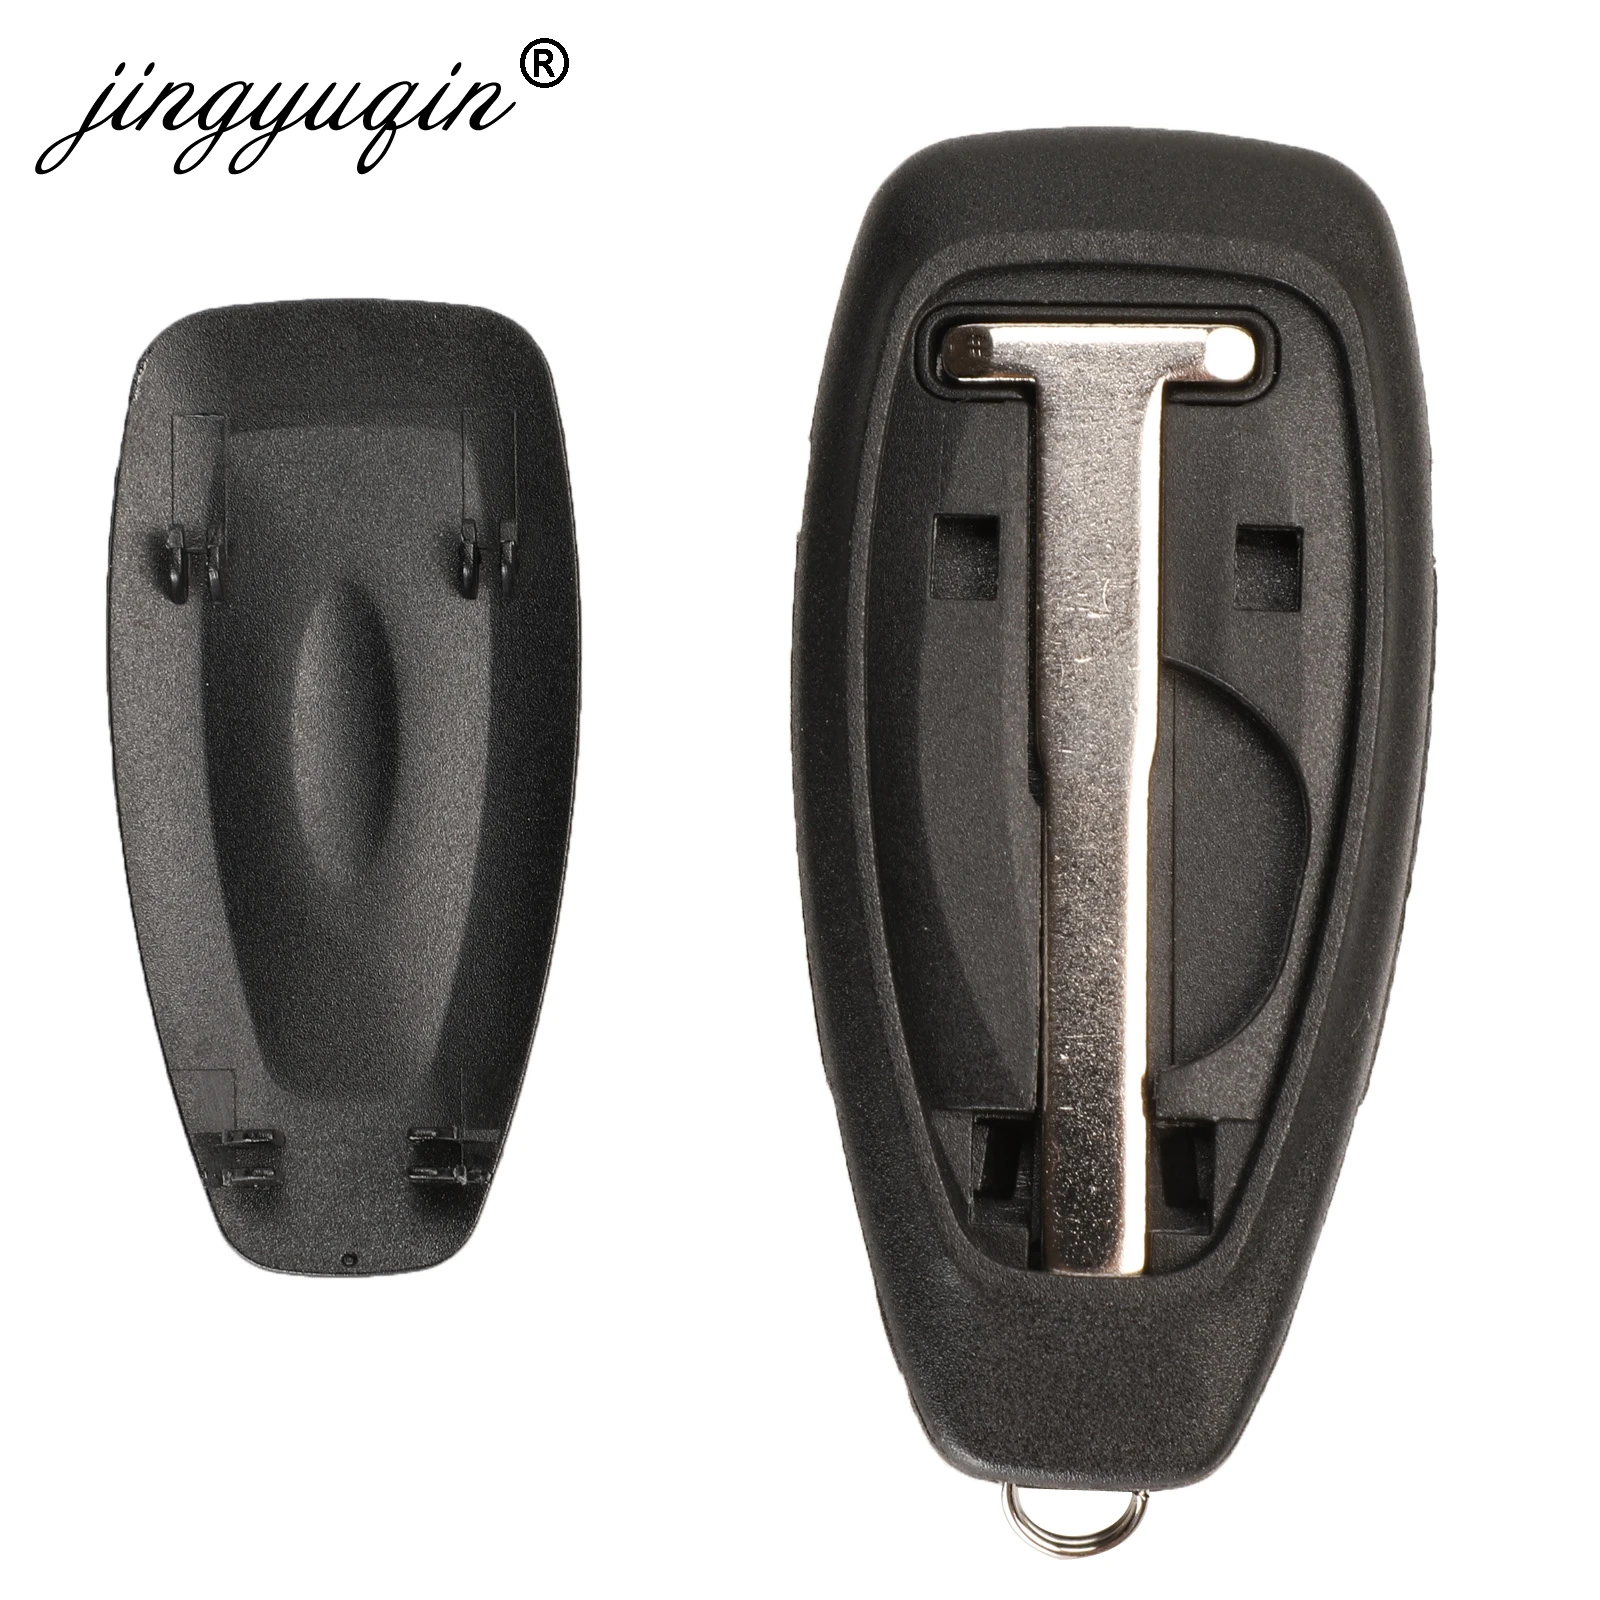 Jingyuqin 5pcs Smart Fjernbetjening Nøgle For Ford Focus C-Max, Mondeo Kuga Fiesta, B-Max 433Mhz ID49/ 4D63 80Bit Intelligent Contorol 1